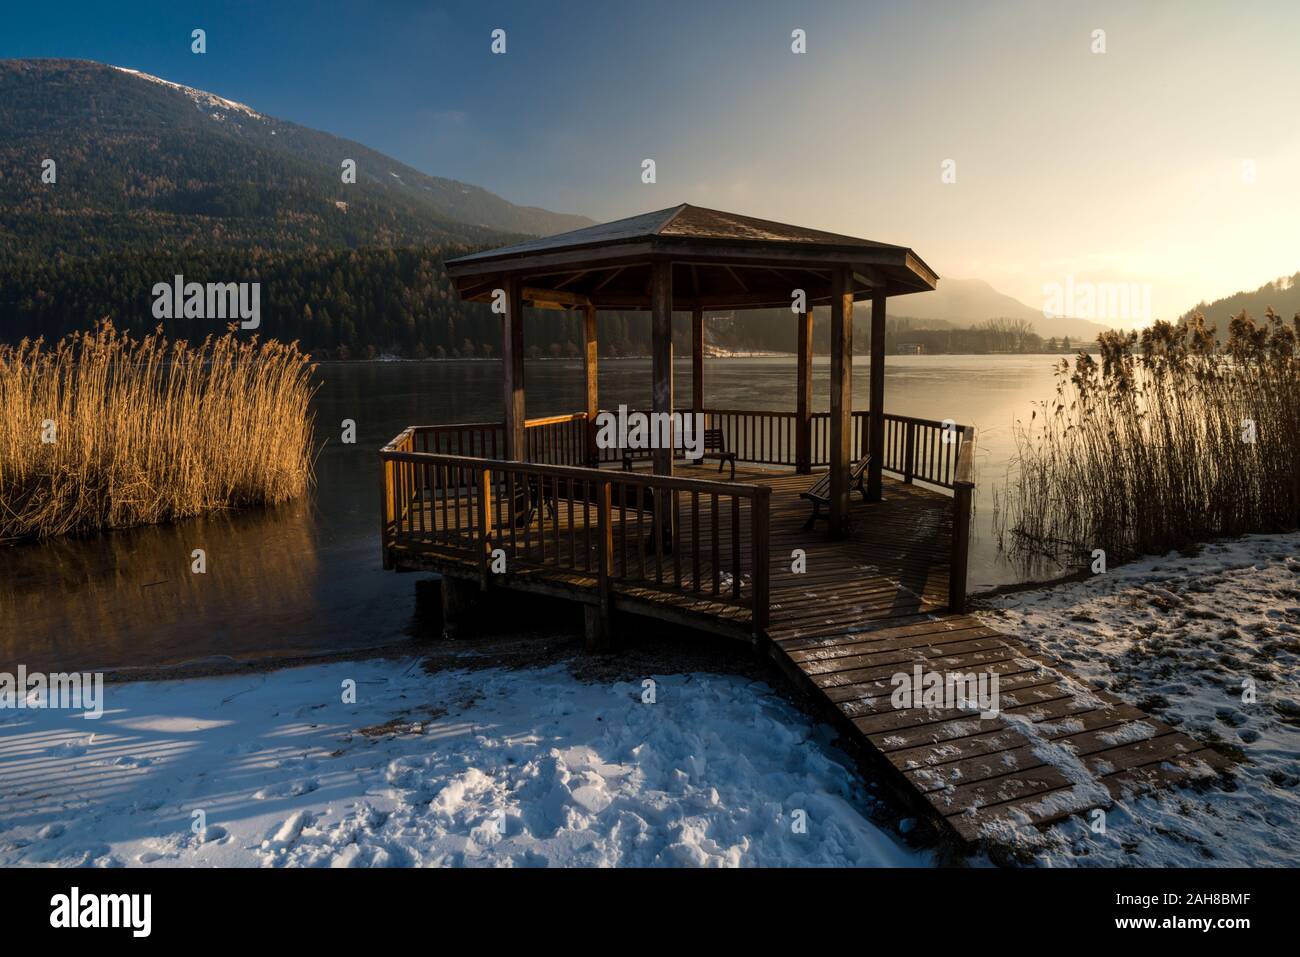 Weitwinkel Blick auf eine norditalienische Winterlandschaft, mit einem hölzernen Pavillon am Wasser umgeben von einem Rohrdickicht und einem entfernten Berg Stockfoto